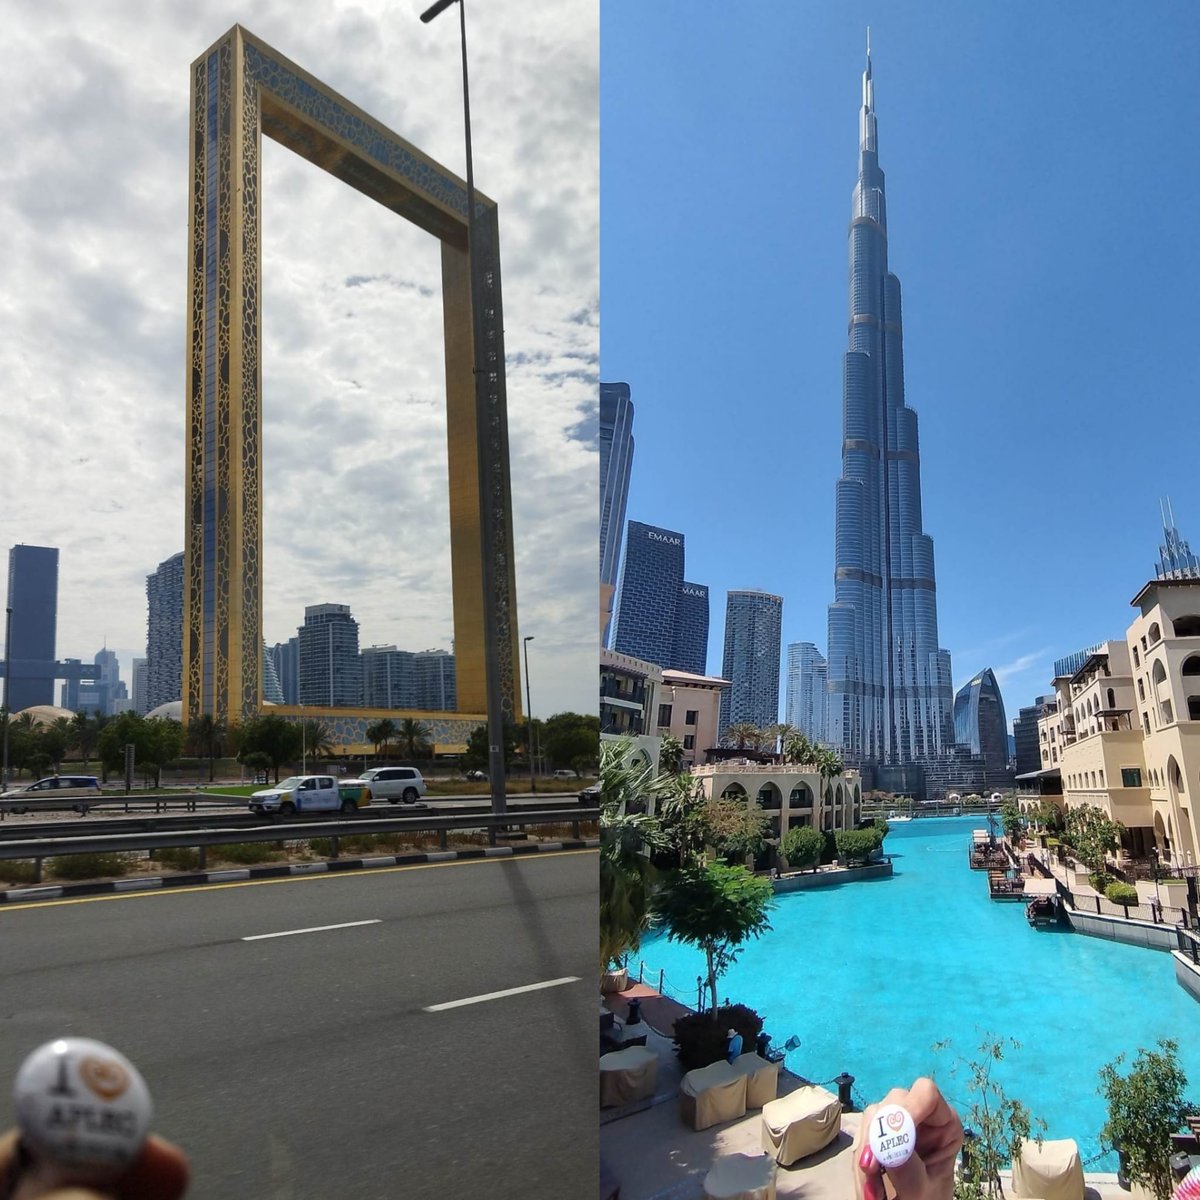 Si feu #PostureigViatger amb #PostuProductes solidaris, envieu-me fotos! Lo Celestí segueix de viatge pel món i avui toquen fotos al #DubaiFrame i al #BurjKhalifa de #Dubai, amb la #PostuXapa #ILoveAplec. Moltes gràcies ministre!!!